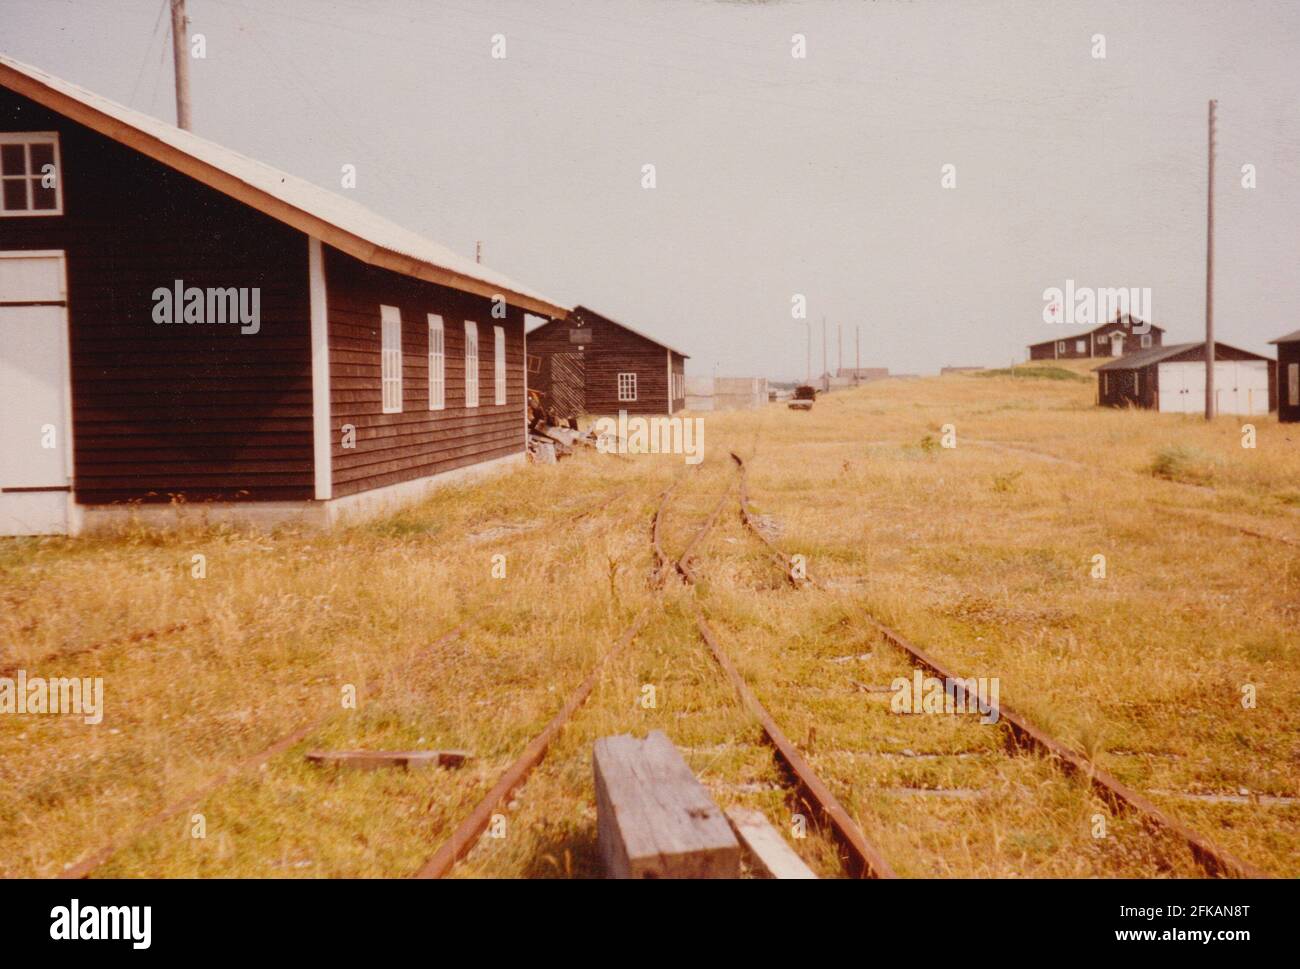 Agger, Danimarca - 1983: Le officine della manutenzione della conca 'Vandbygningsvsenet' con i binari ferroviari a scartamento ridotto (785mm) ora rimossi Foto Stock